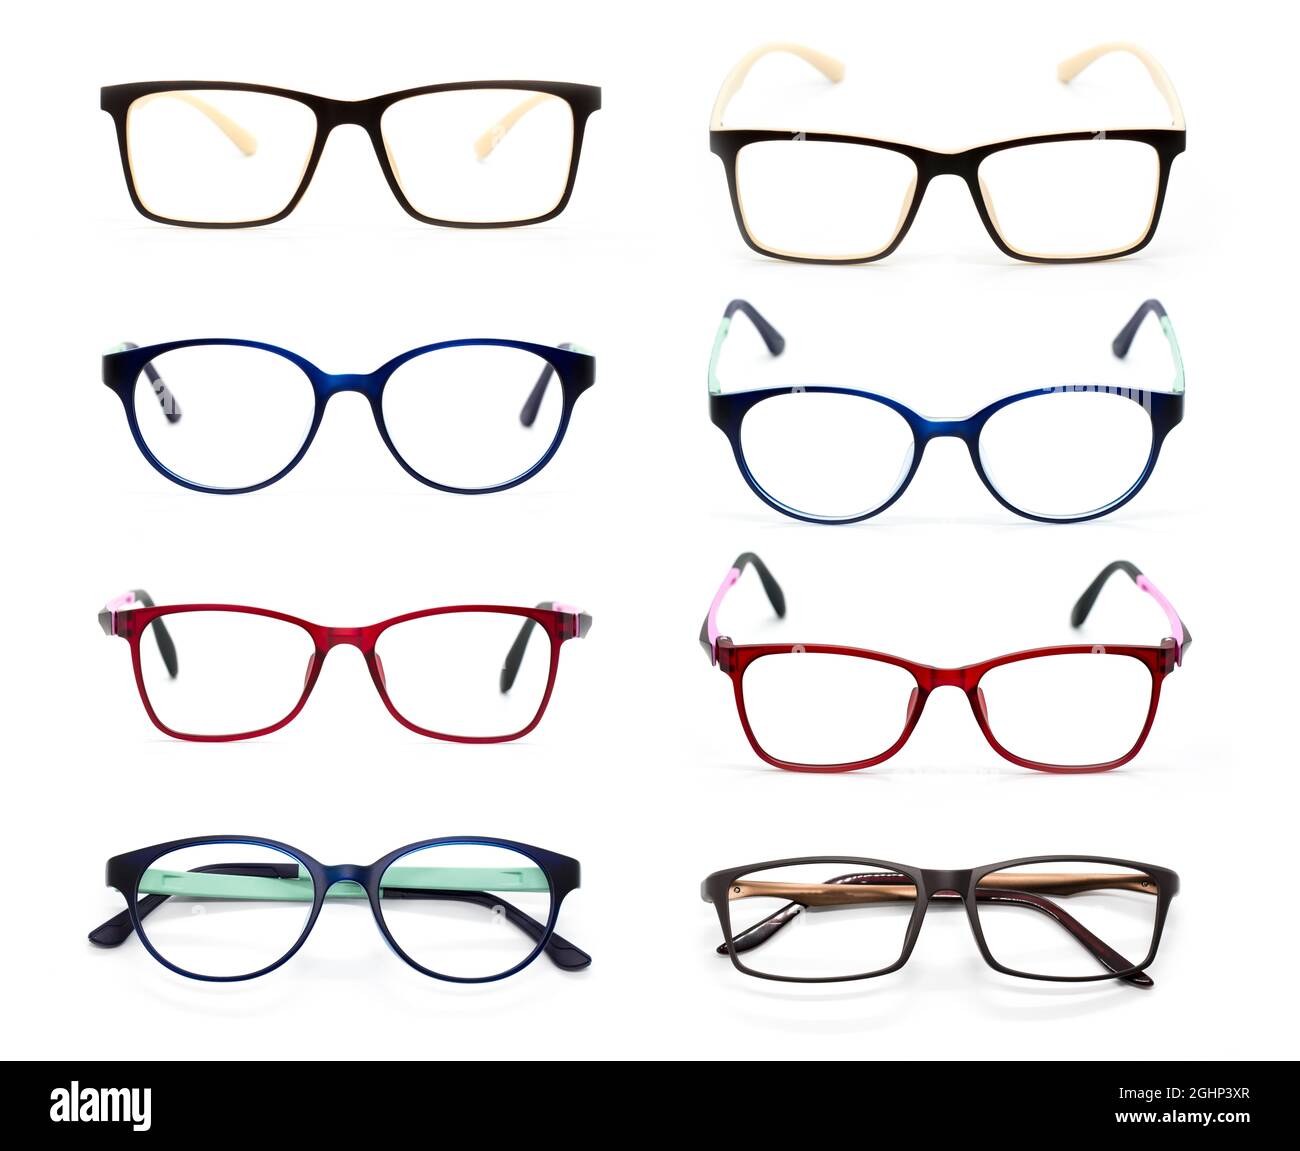 Gruppo di occhiali moderni e alla moda isolati su sfondo bianco, perfetto riflesso, occhiali Foto Stock